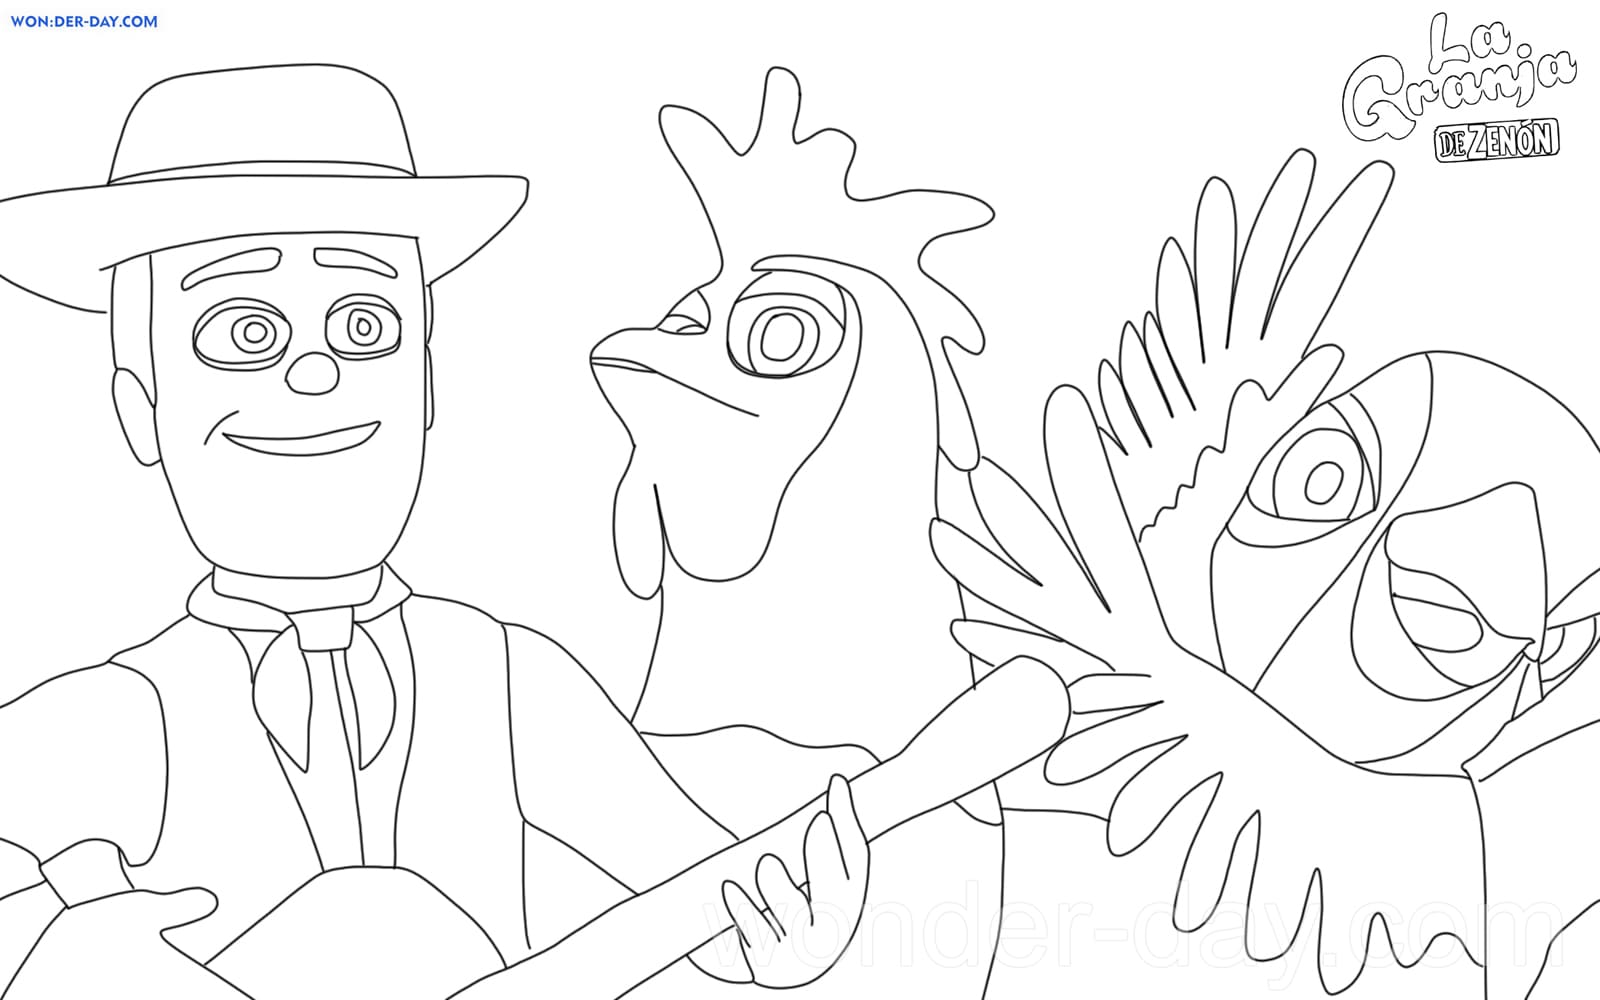 Dibujo para imprimir y colorear del gallo Bartolito de La granja de Zenón